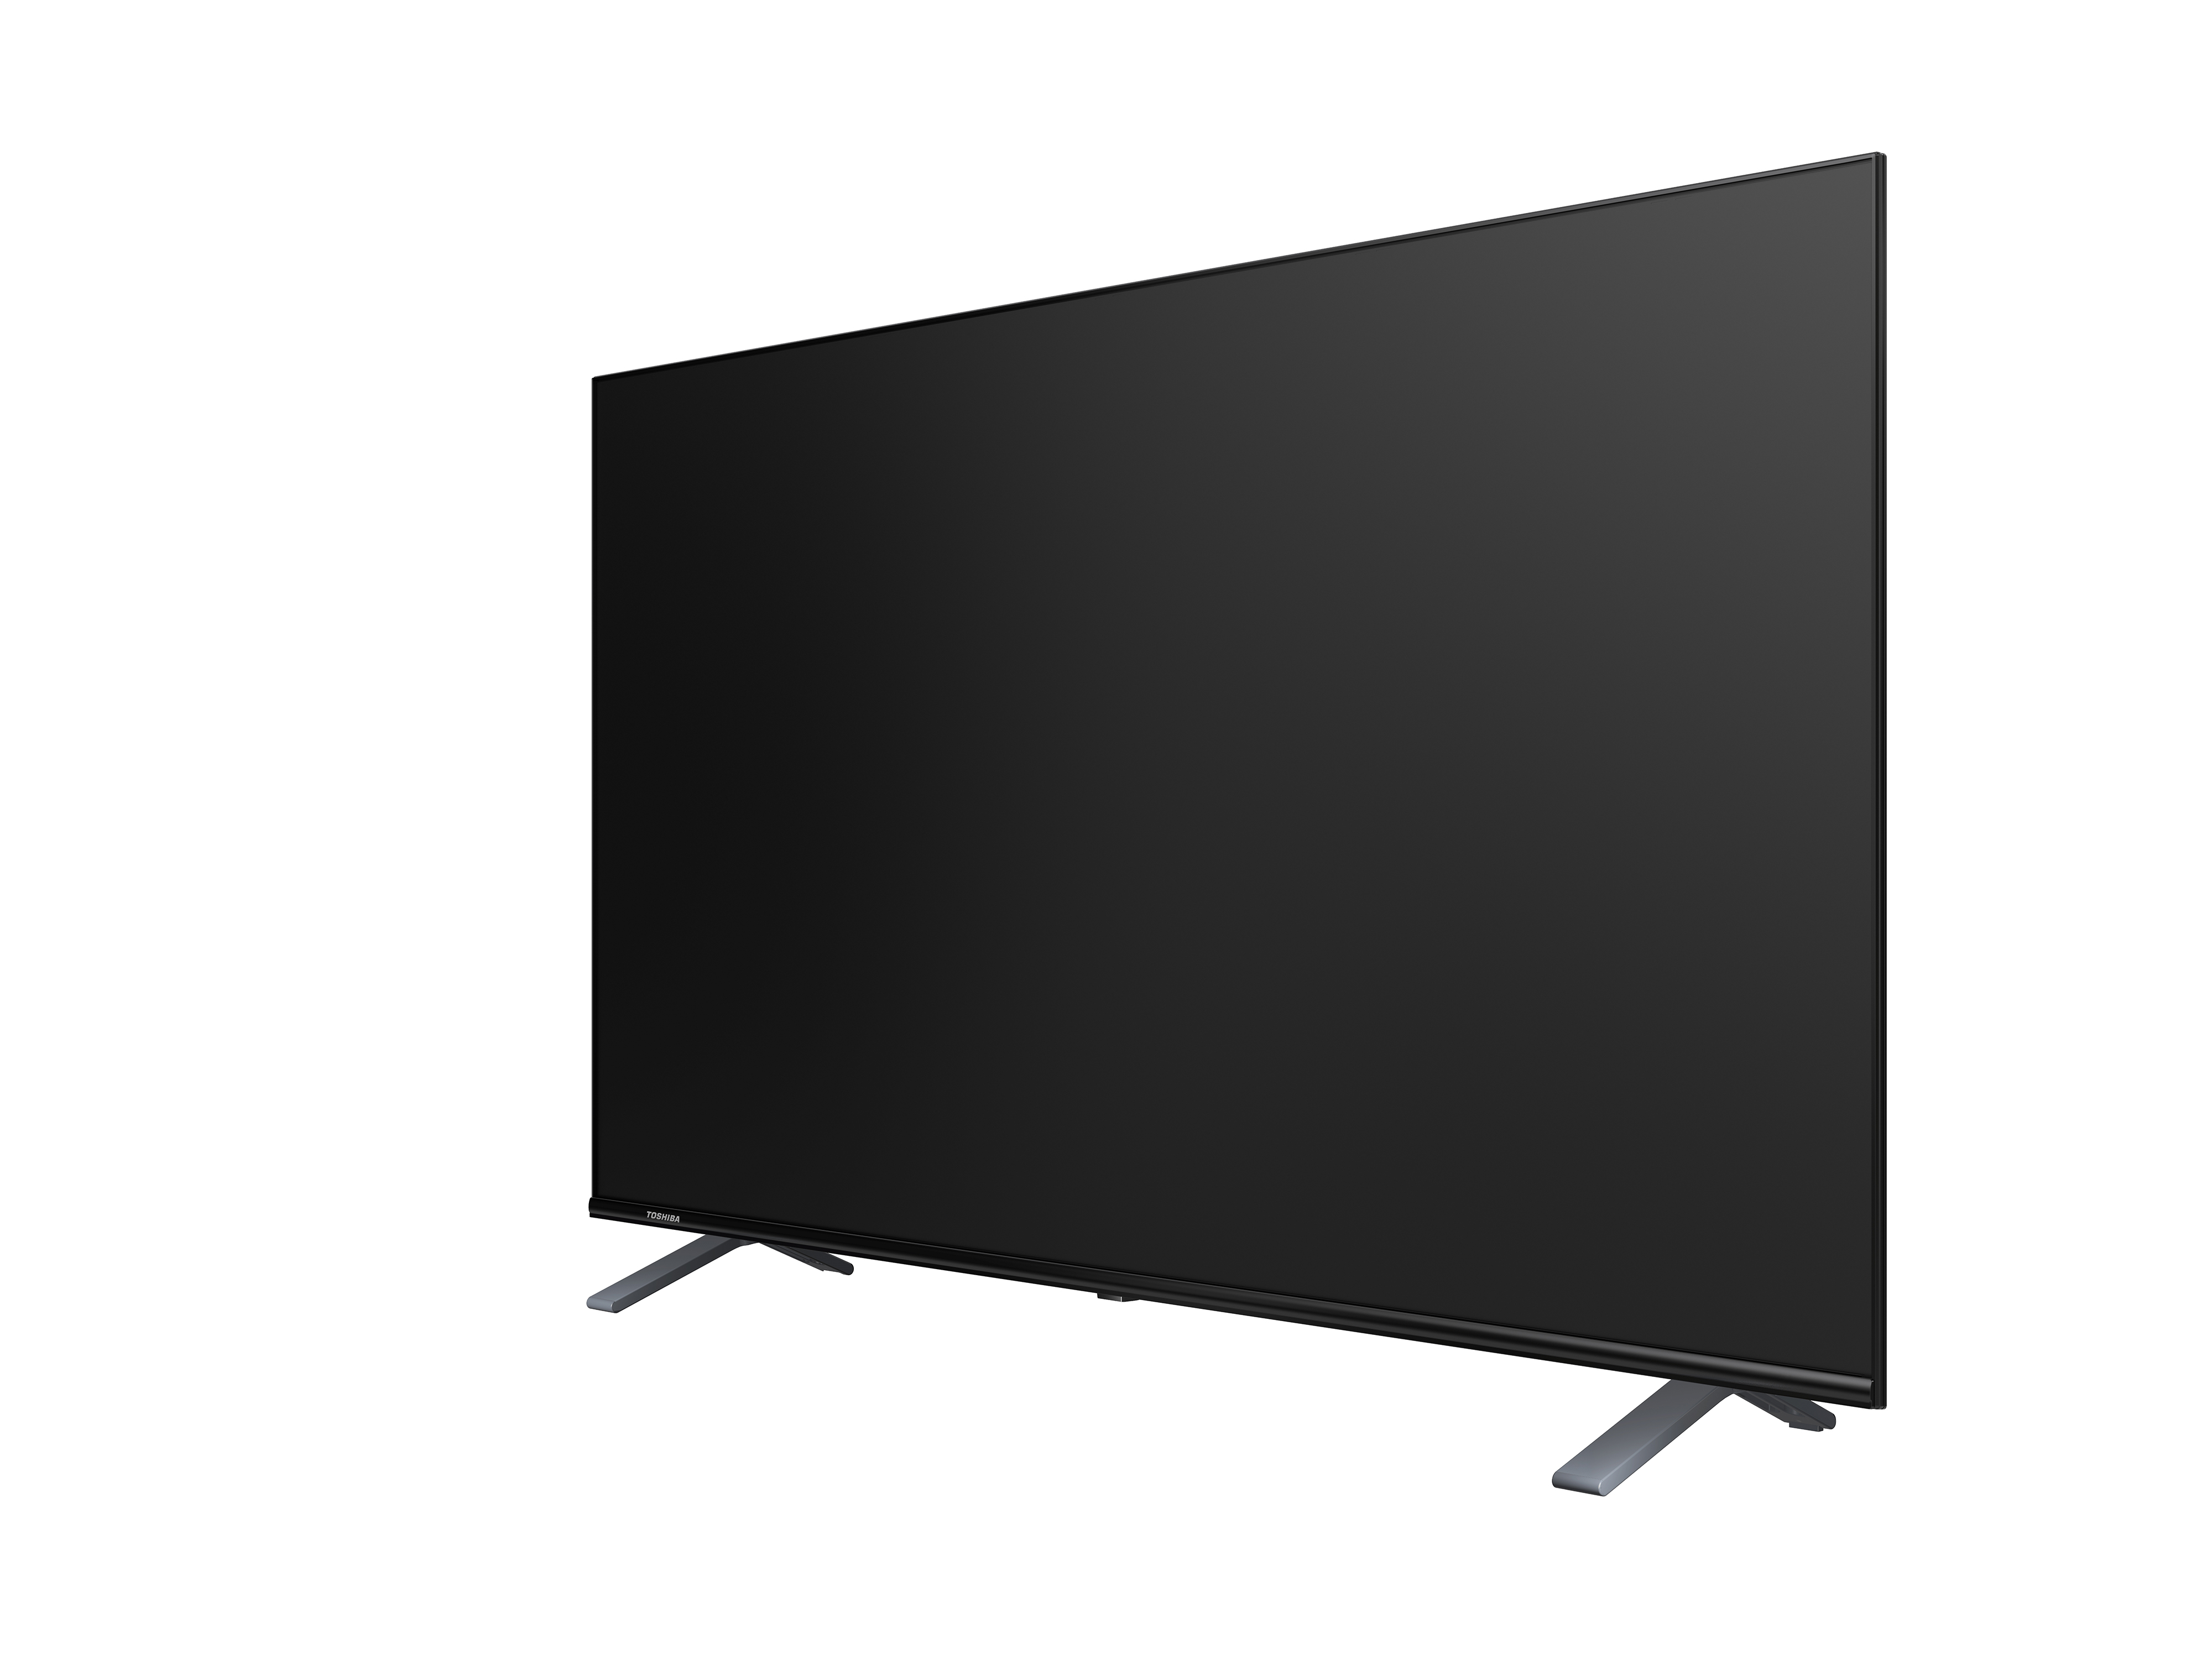 SMART 4K - GOOGLE TV TOSHIBA 75 inch (75C350LP) – Chống ánh sáng xanh - Tìm kiếm bằng giọng nói - Tràn viền - Công nghệ tái tạo màu tiên tiến - Âm thanh Dolby Audio hiện đại - Loa 24W - Wifi 2.4/5GHz - Hàng chính hãng